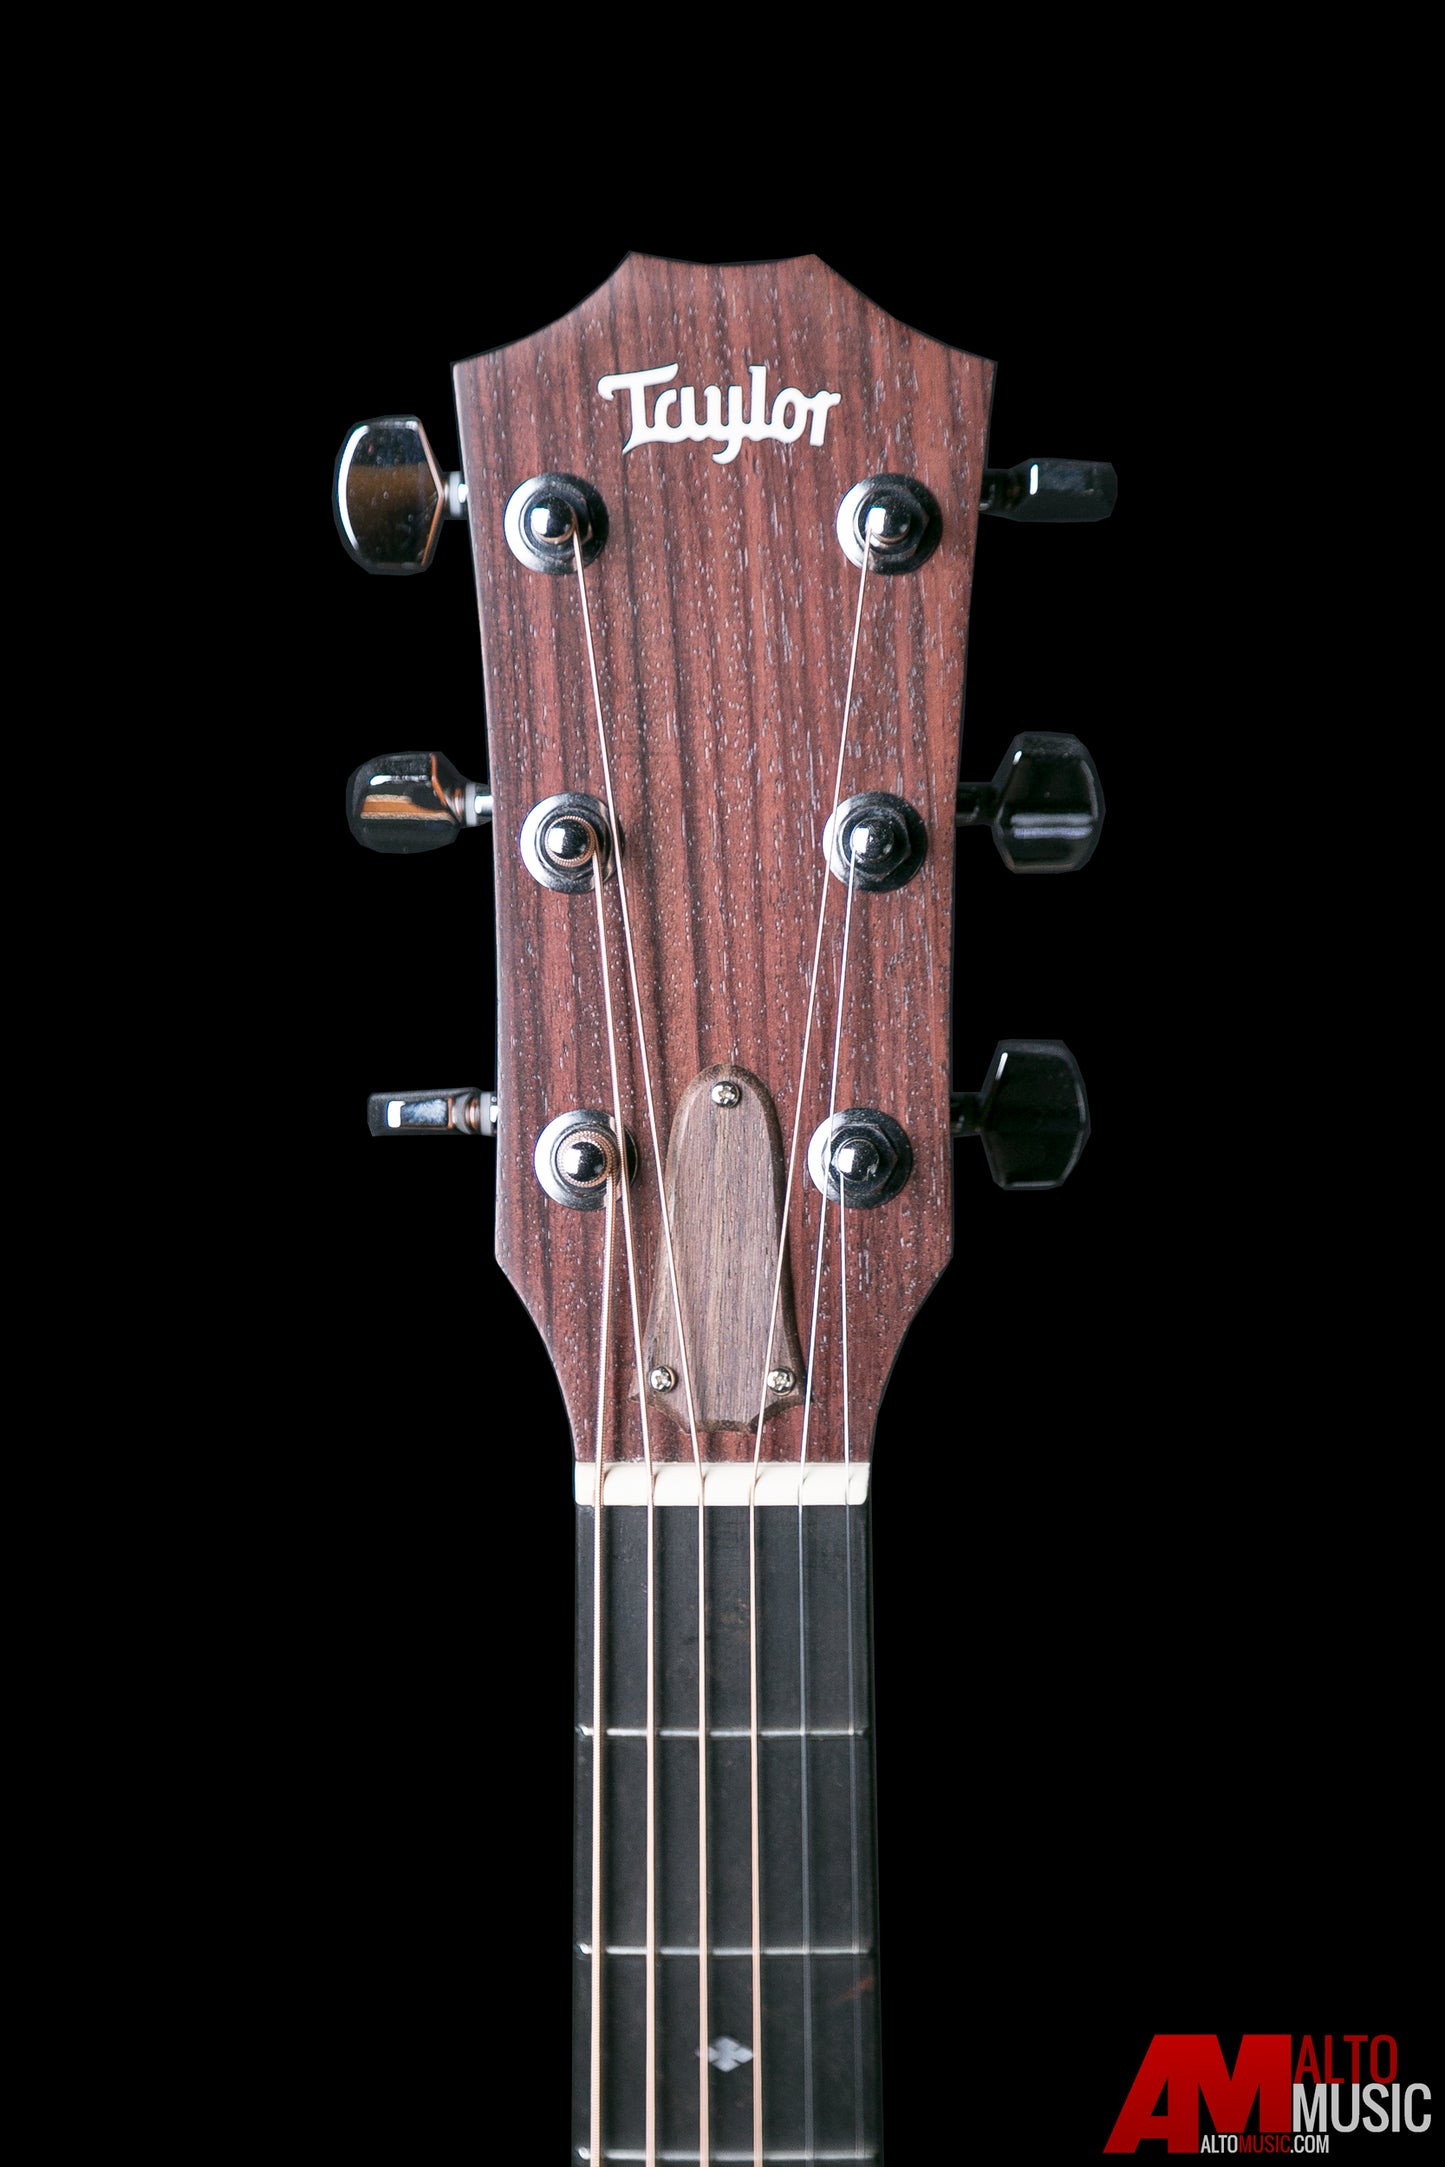 Taylor 214ce-K DLX Acoustic Electric Guitar w/ Case